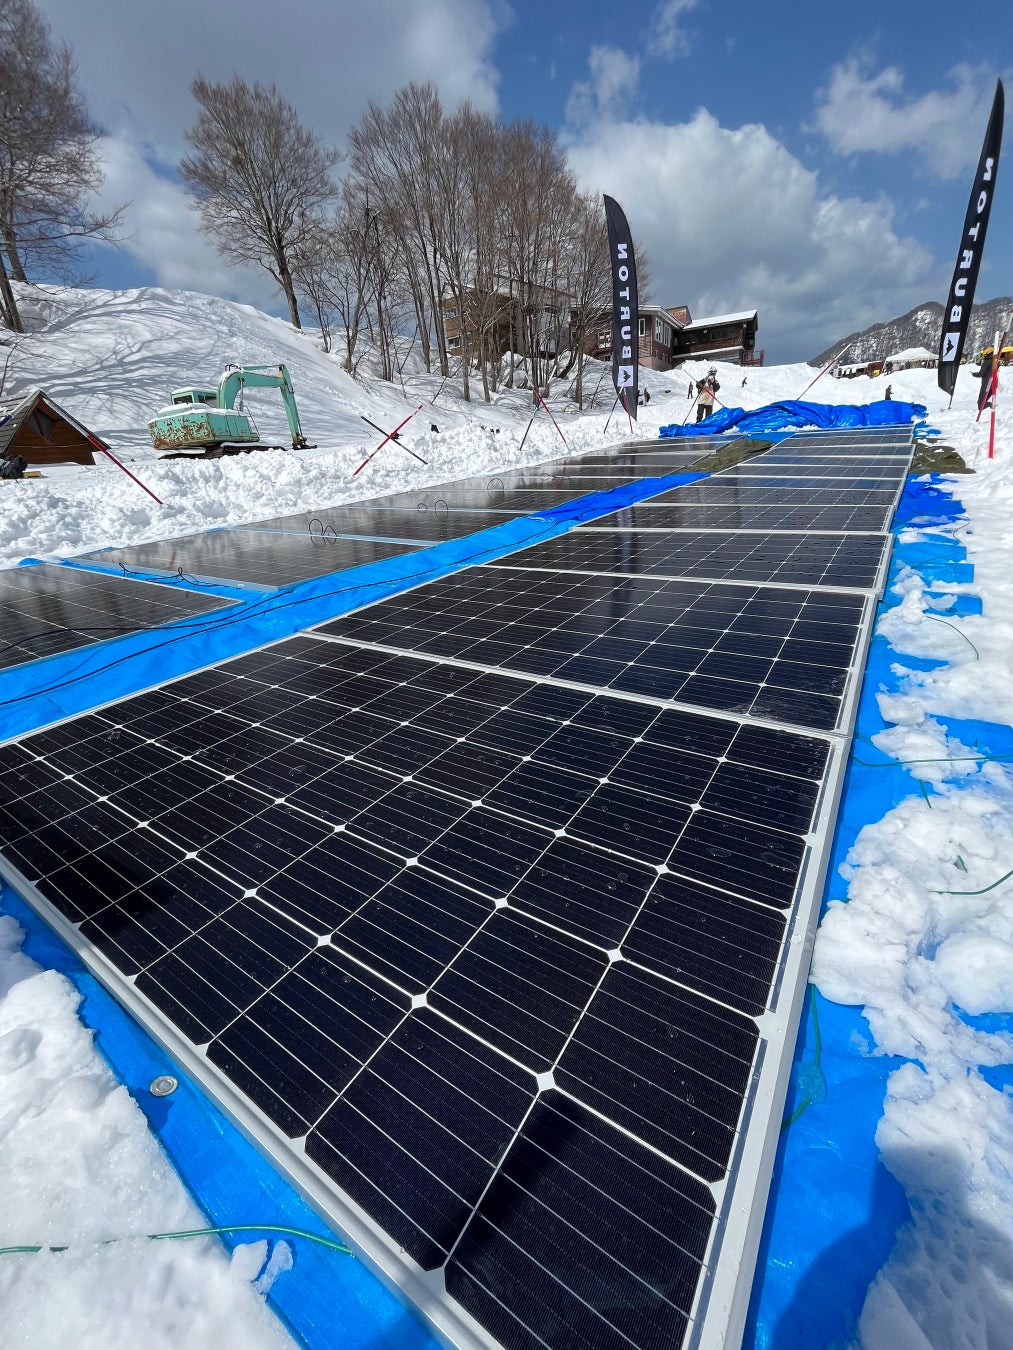  4月8日・9日に湯殿山で開催された地形イベント「DRRREAM SESSION」にて世界で初めて太陽光発電でのロープトー稼働に成功のサブ画像1